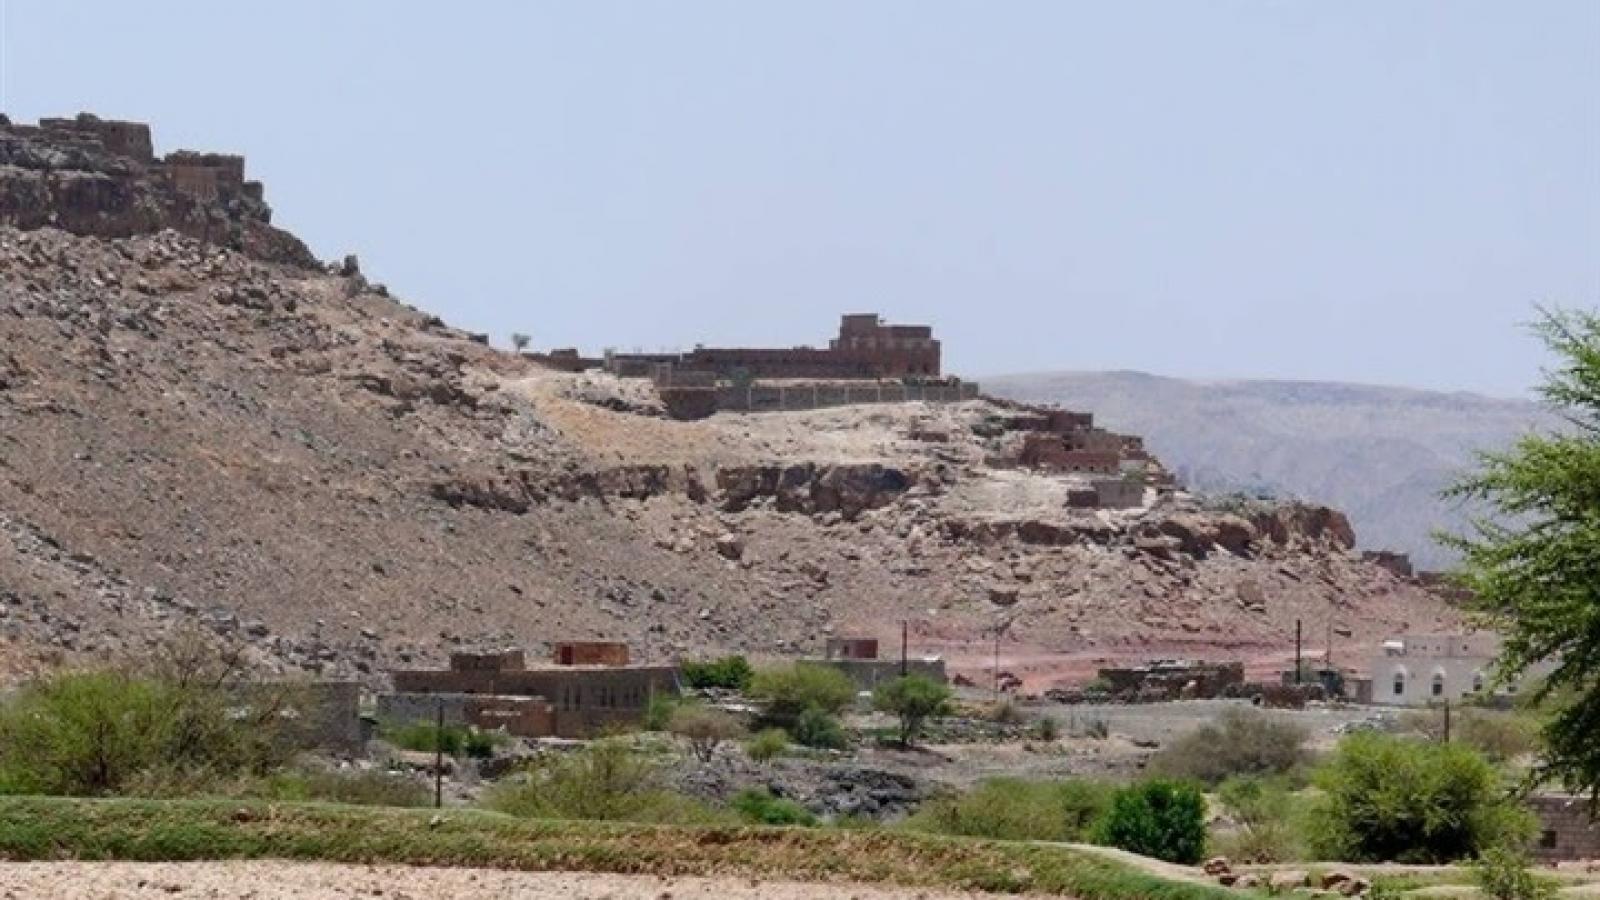 صورة الموقع الاثري للجبل التي بنيت عليها مدينة بينون الاثرية والتي تحتضن متحف بينون ، موقع اليمن العربي ، ٦ فبراير ۲۰۱۹